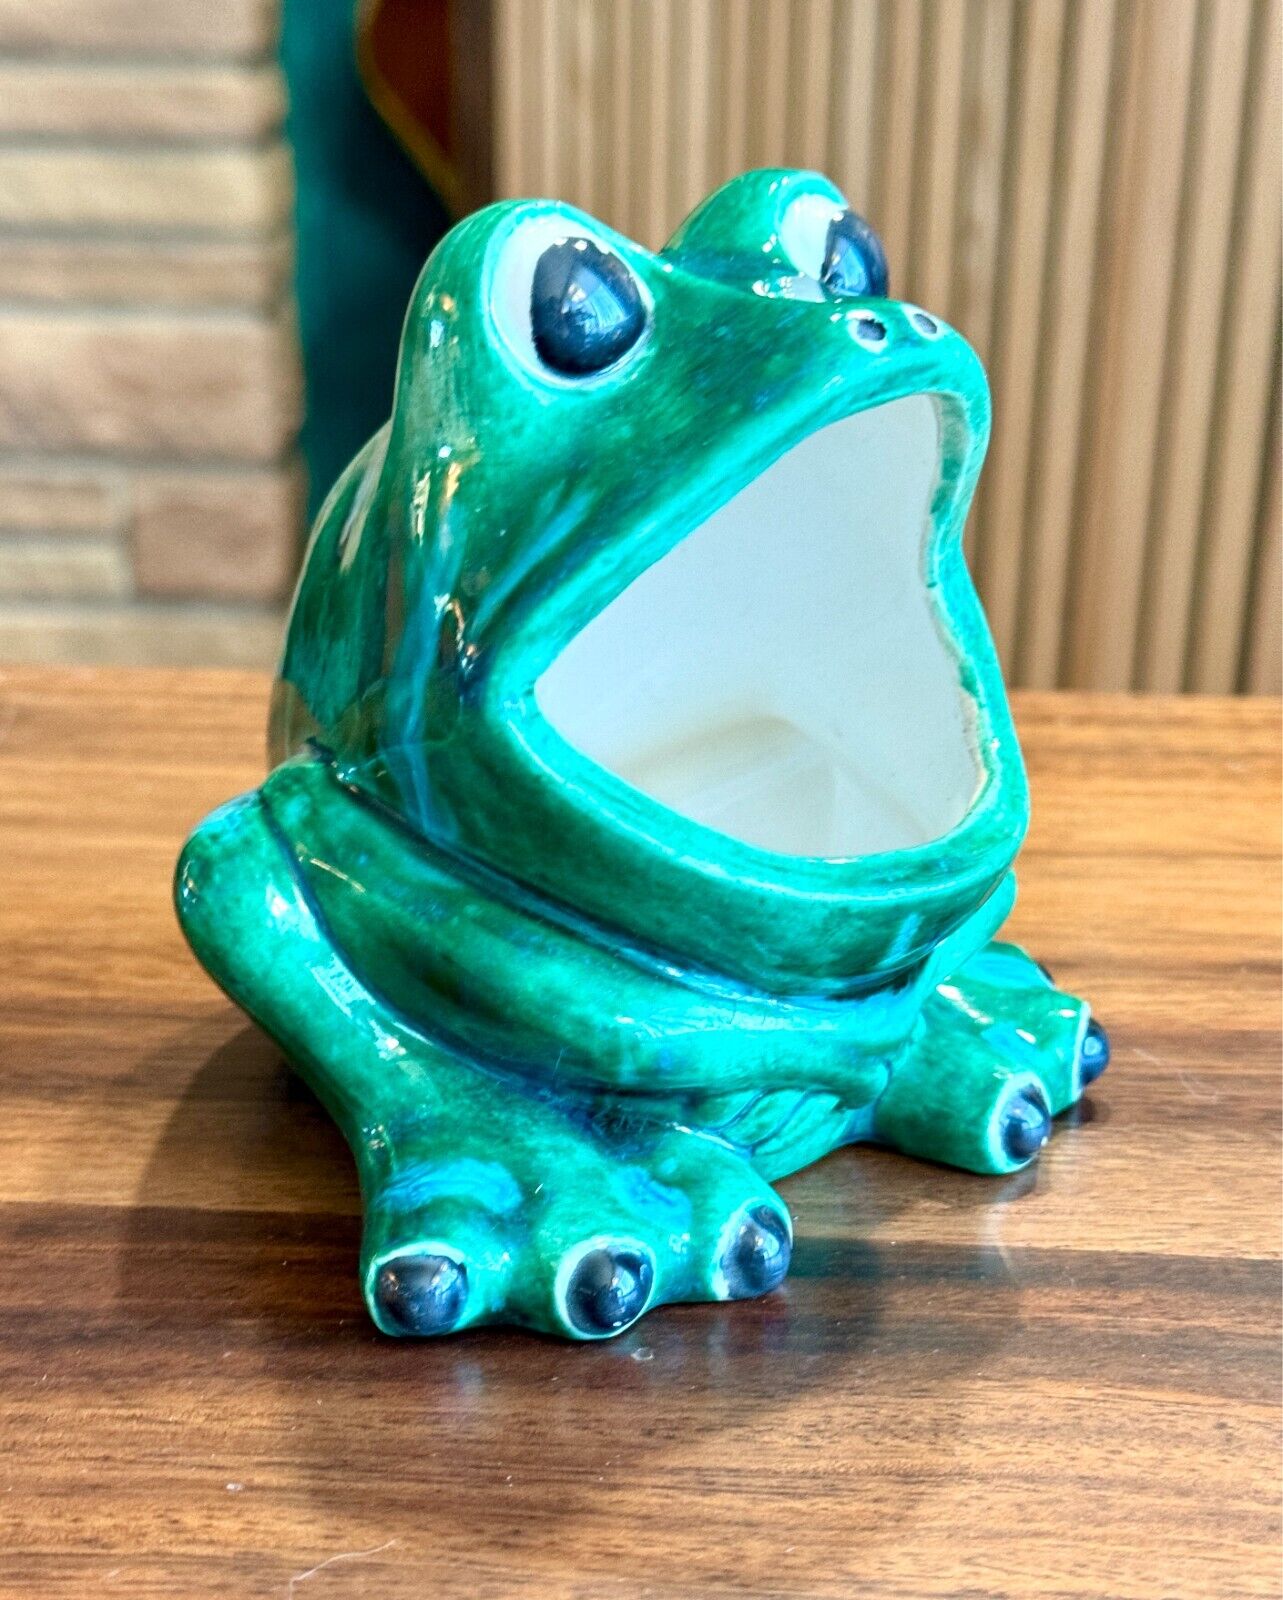 Vtg Retro 85 Big Wide Mouth Ceramic Frog Kitchen Sponge Sink Holder Hand Painted